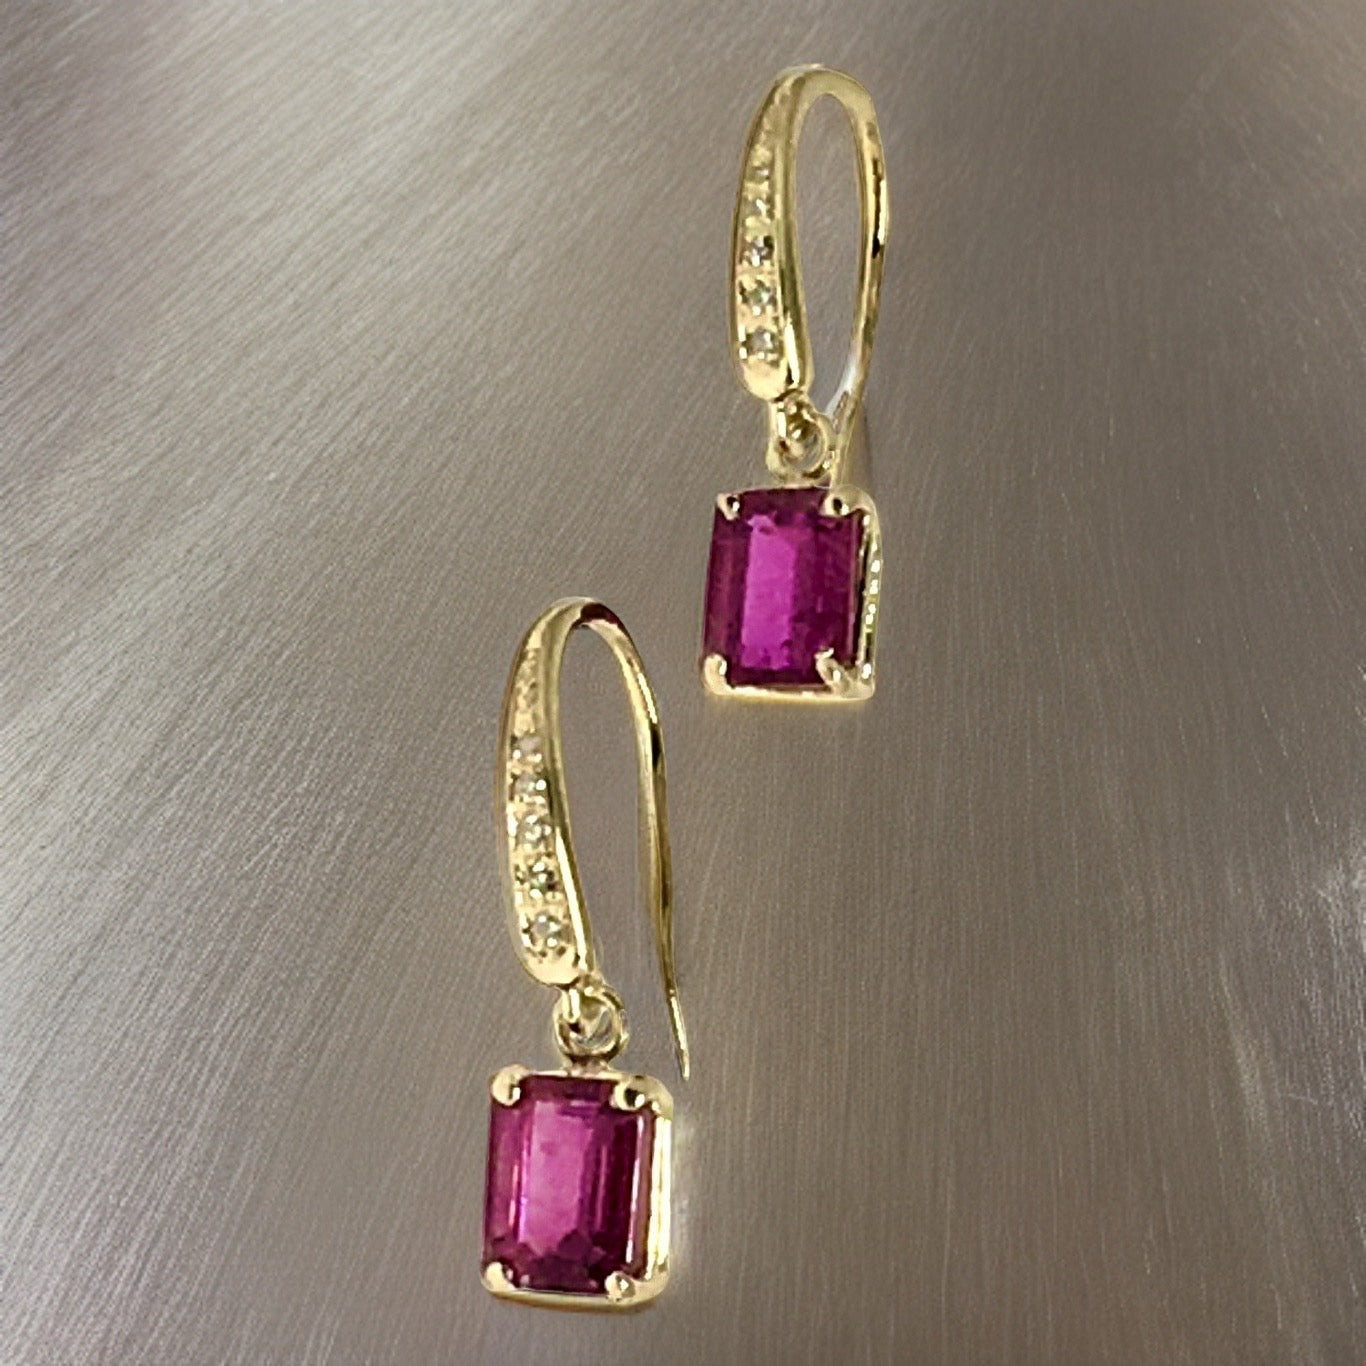 Diamond Rubellite Tourmaline Earrings 14k Gold 2.05 TCW Certified $1,690 821770 - Certified Fine Jewelry